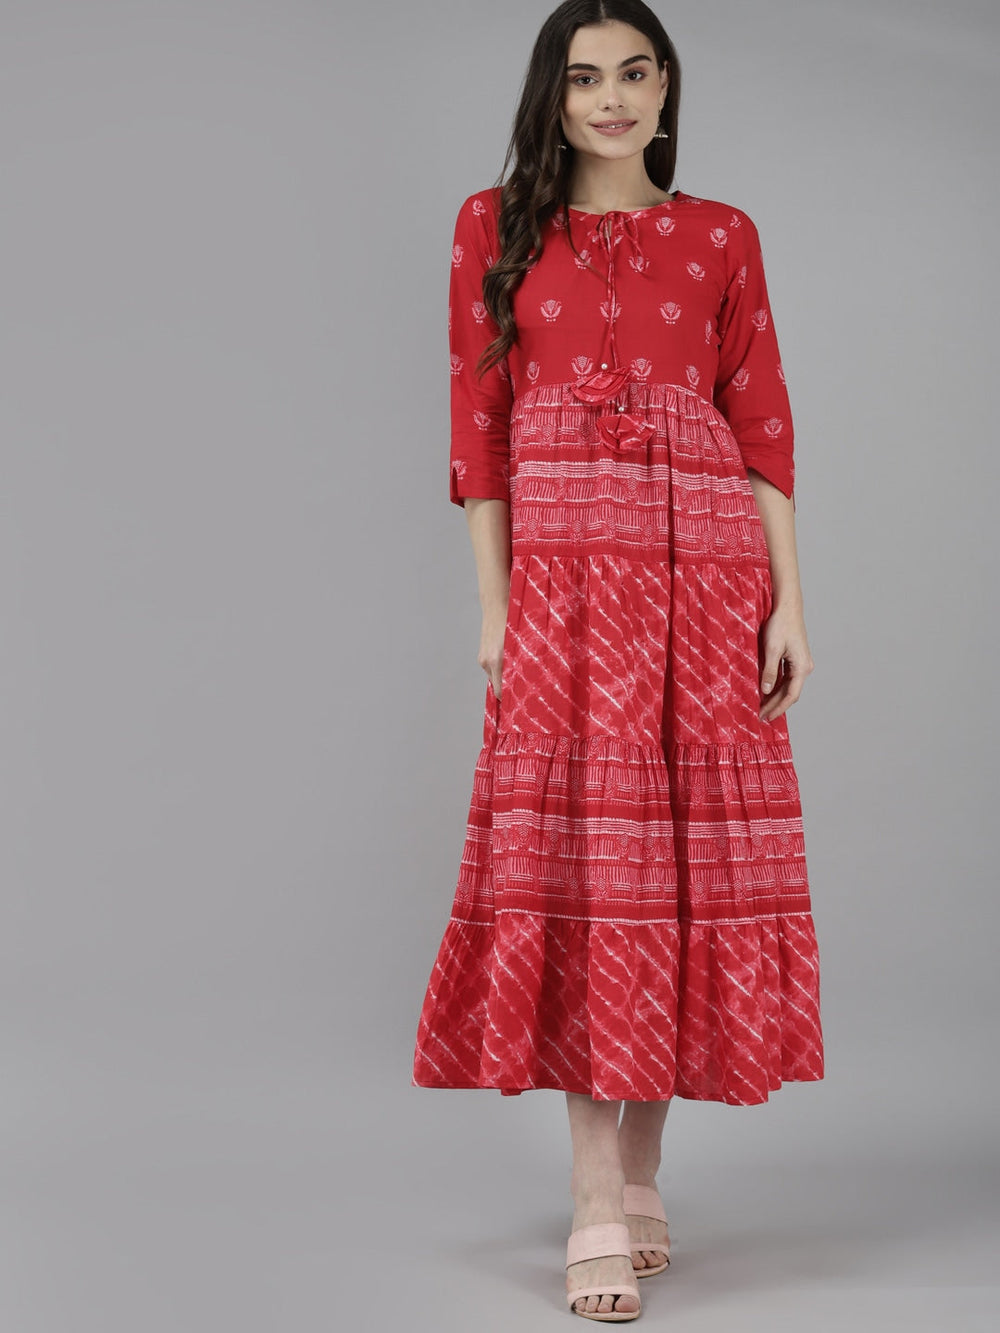 Red & Off White Midi Dress-Yufta Store-9458DRSRDS